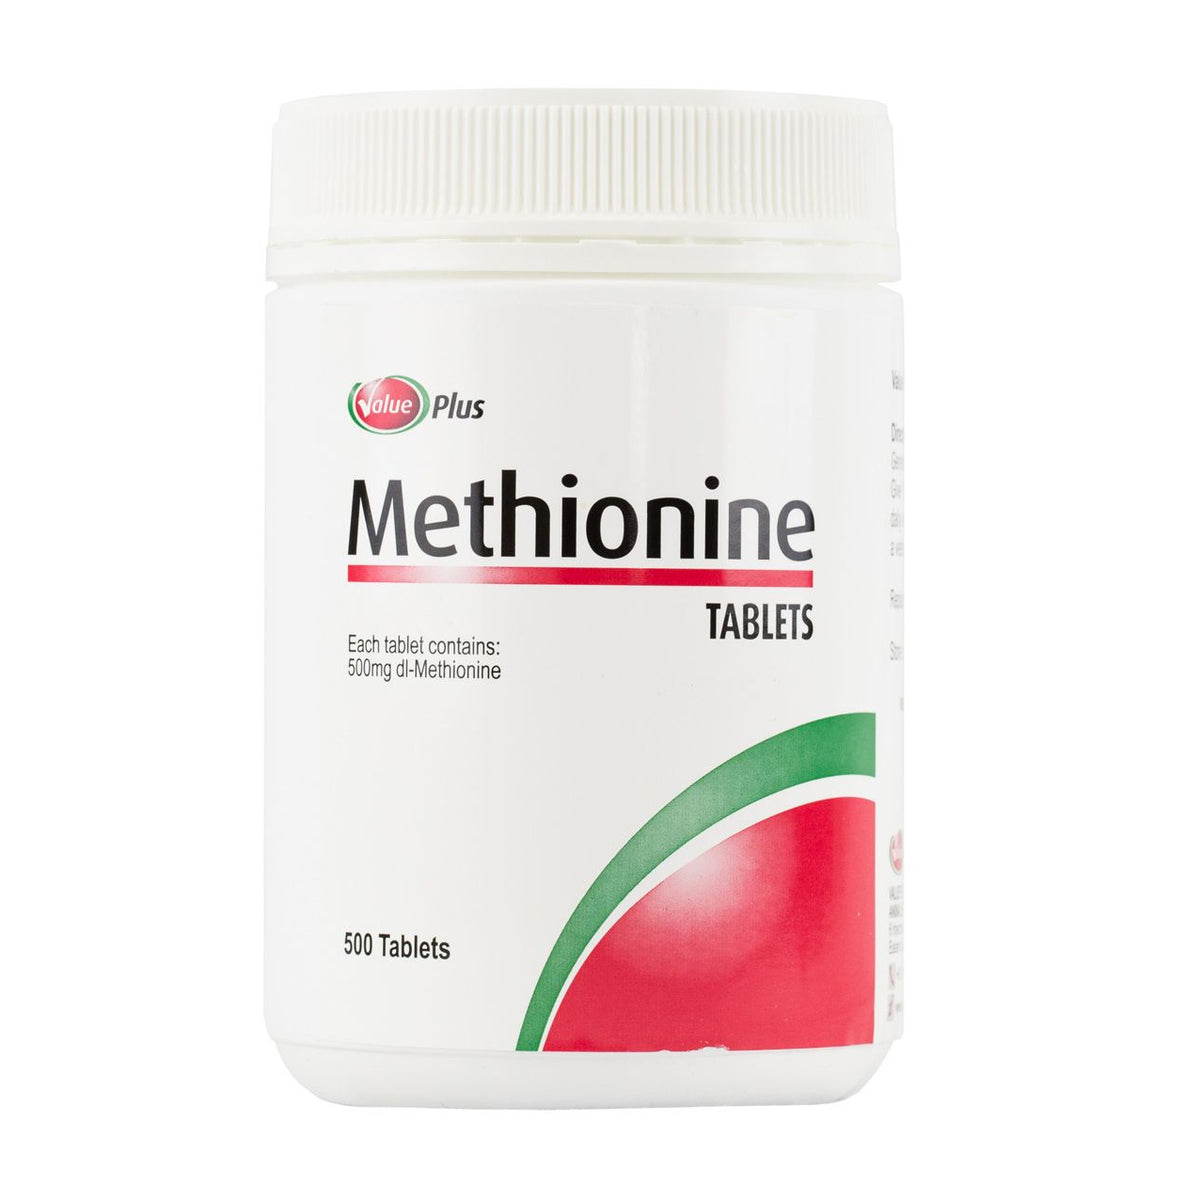 Value Plus Methionine Tablets